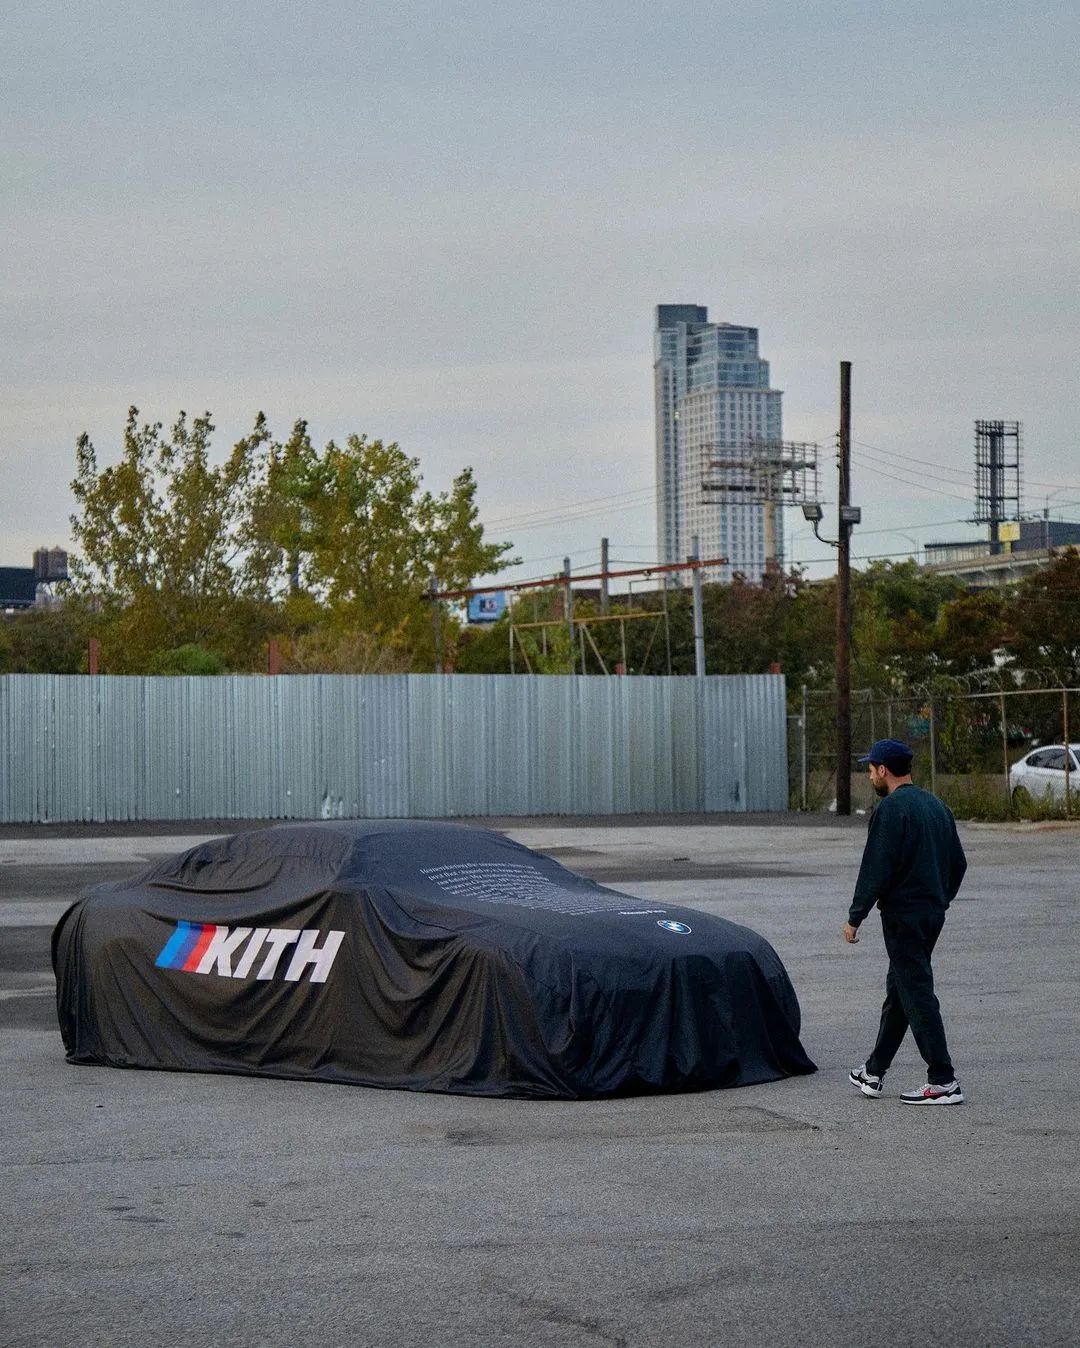 提车！BMW宝马 x Kith联名新联名计划曝光，确认将限量发售...-Supreme情报网